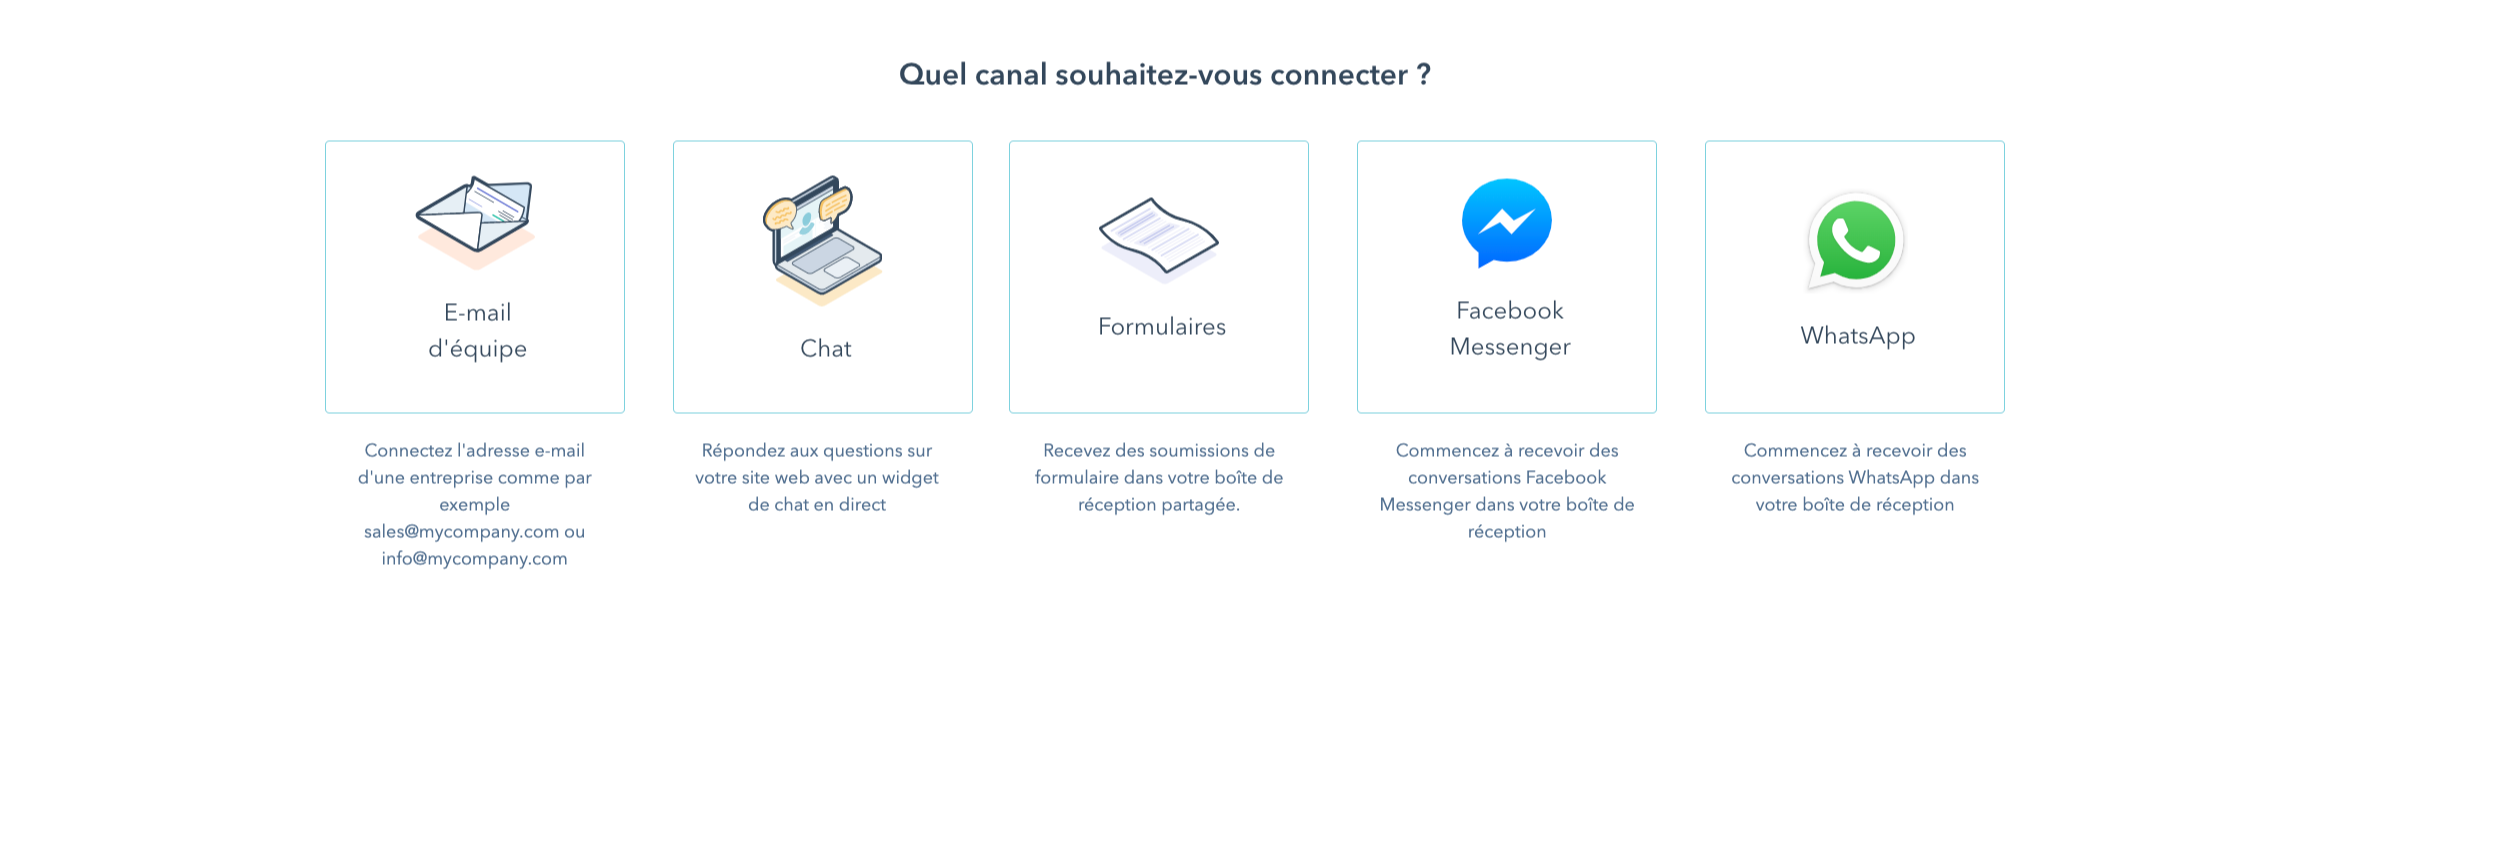 Choix des connexions HubSpot : email, chat, formulaire, messenger et WhatsApp